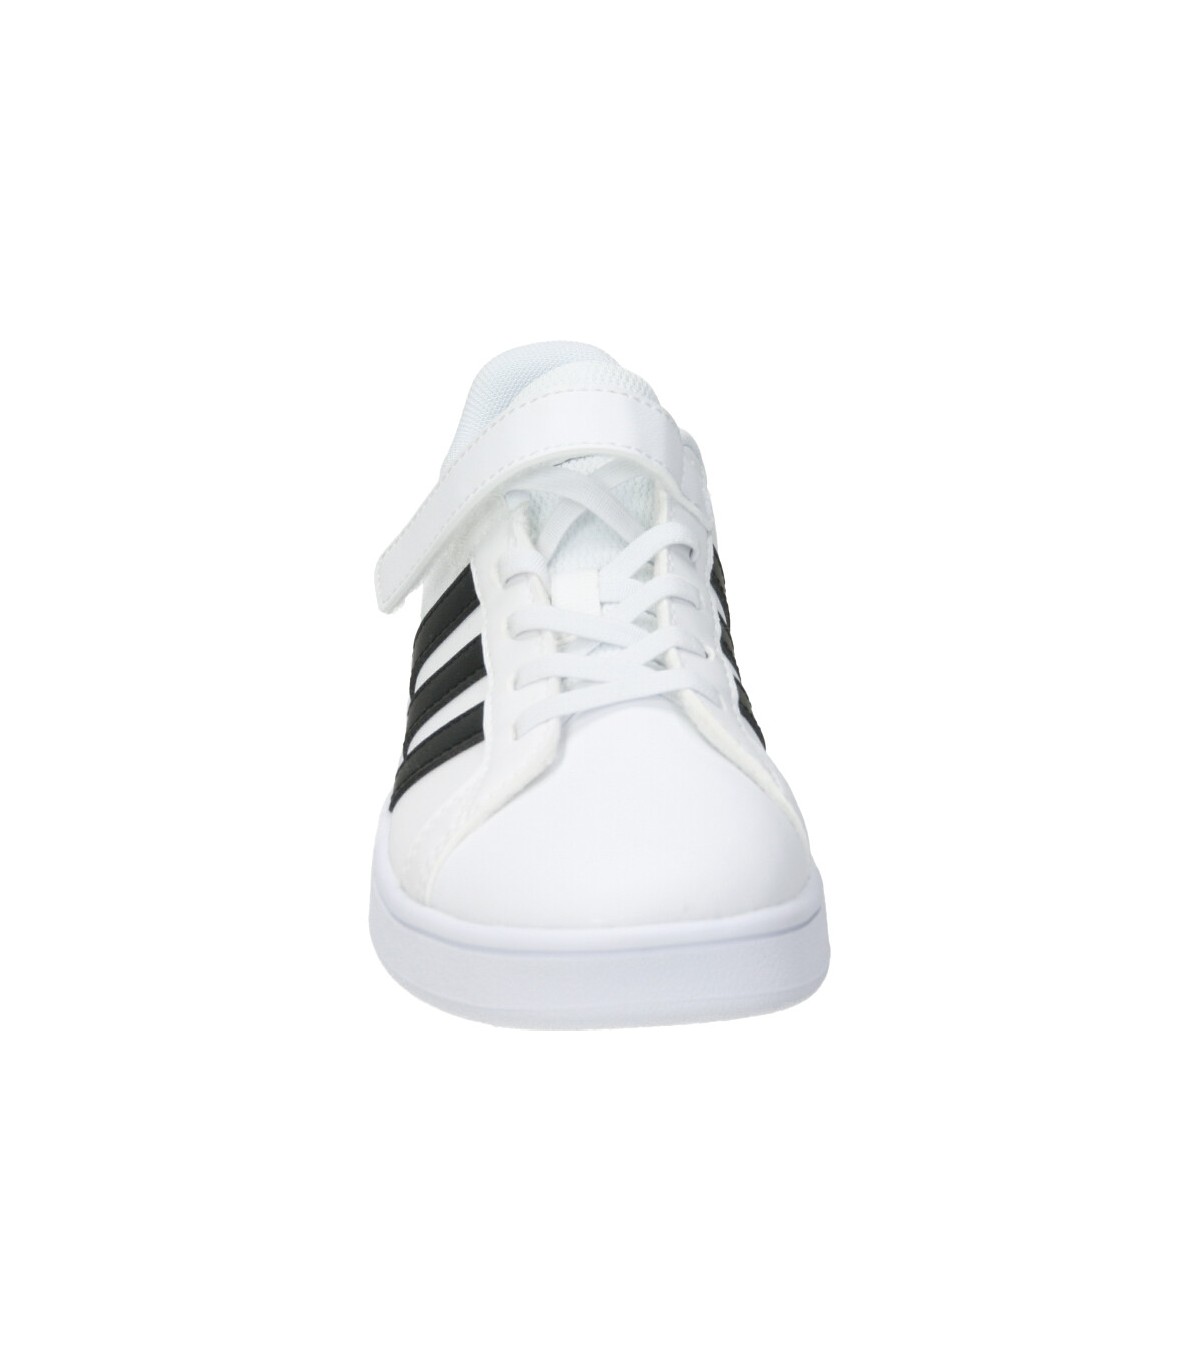 Zapatillas cómodo de niño ef0109 color blanco